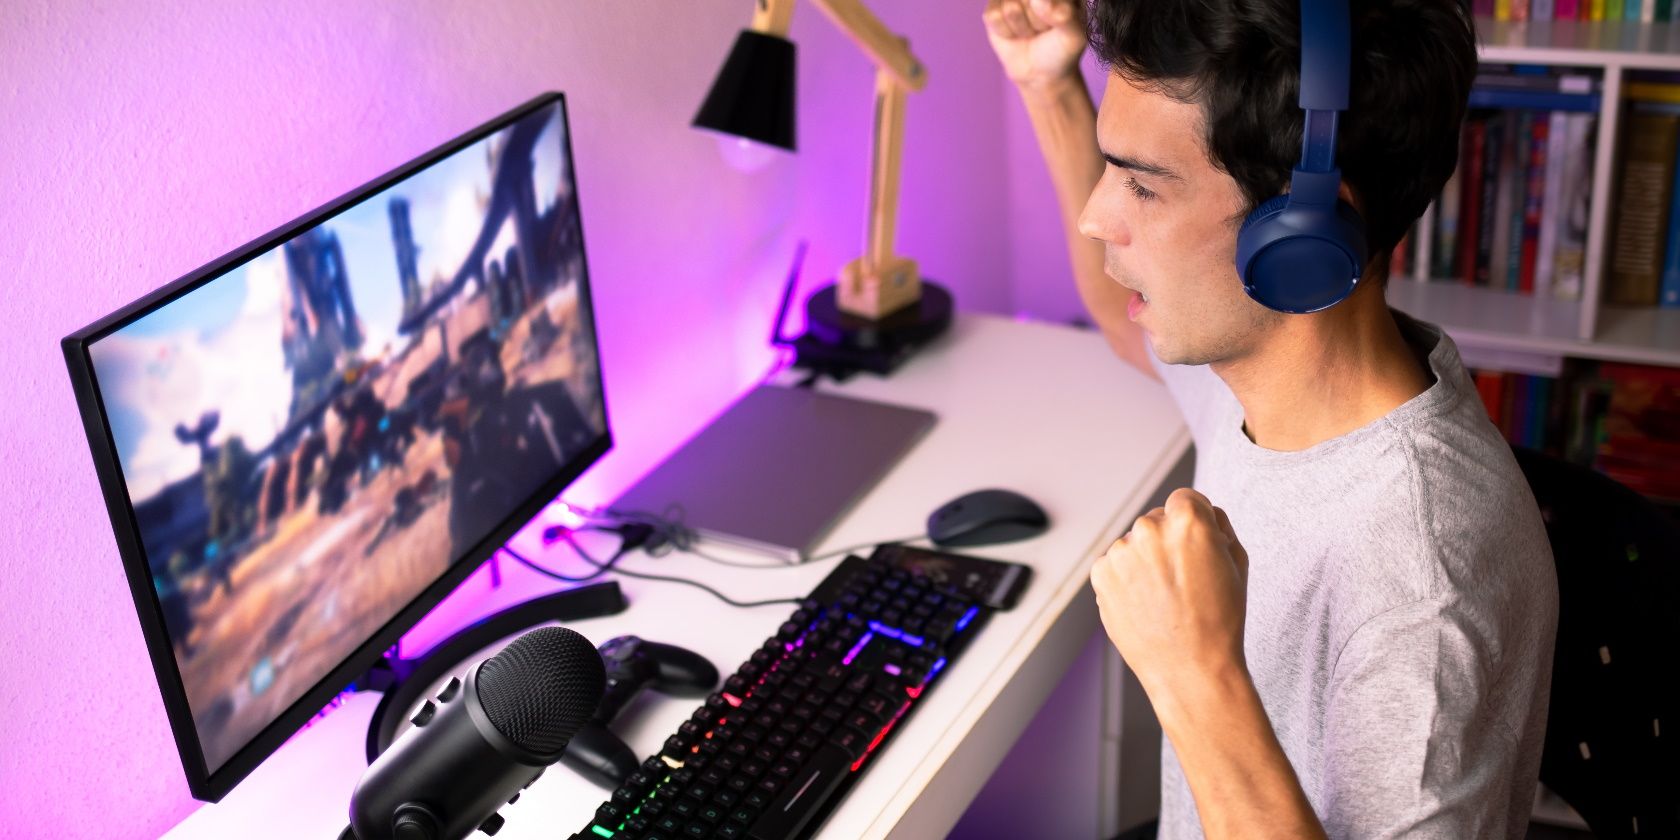 man cheering at game on computer monitor